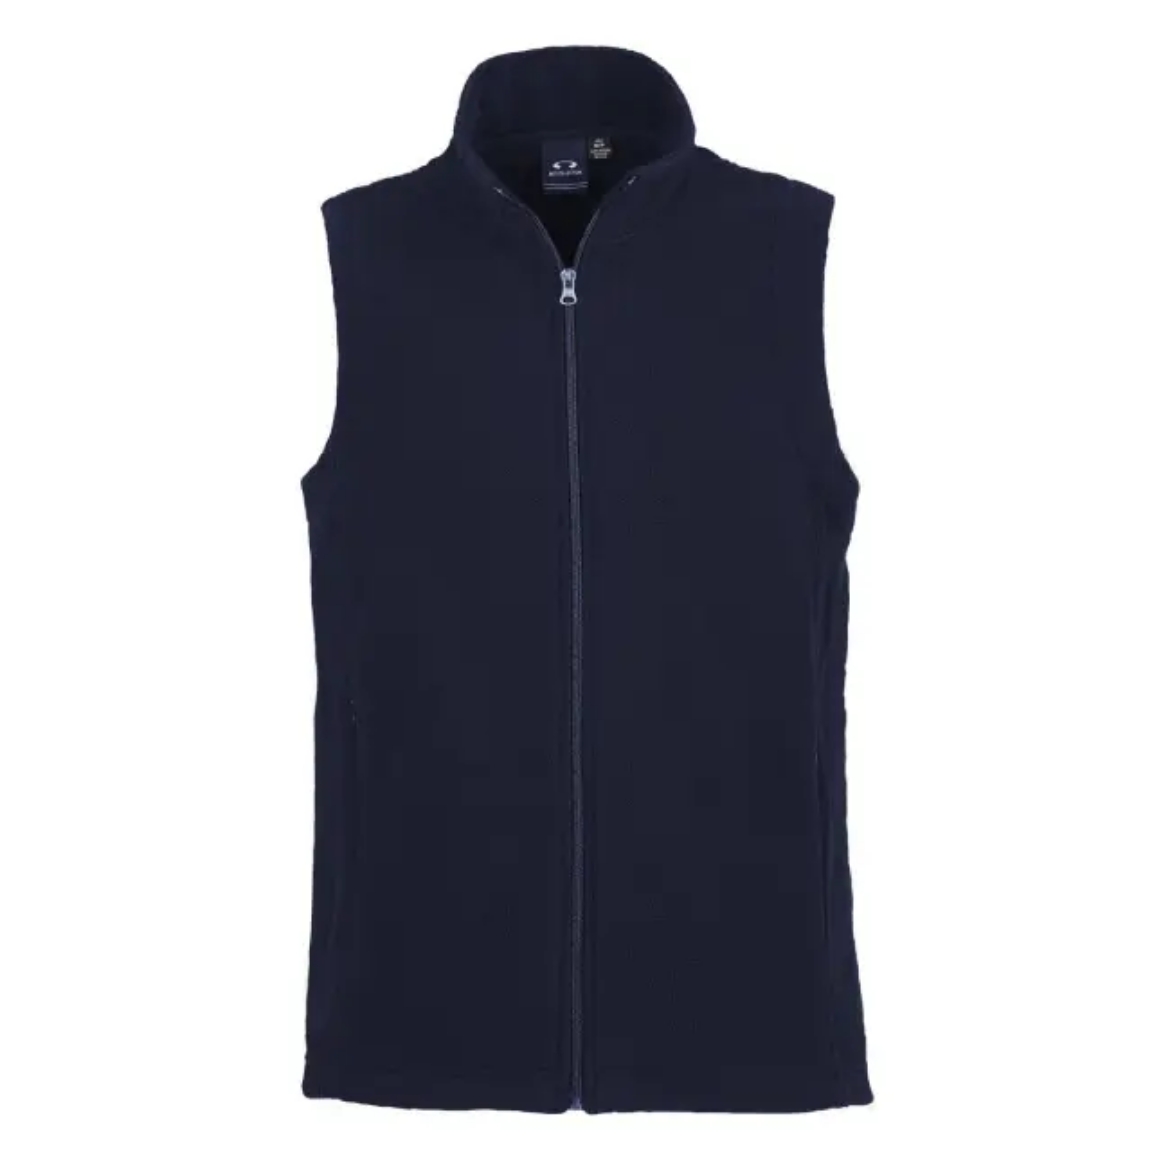 Picture of Biz Collection, Plain Microfleece Ladies Vest